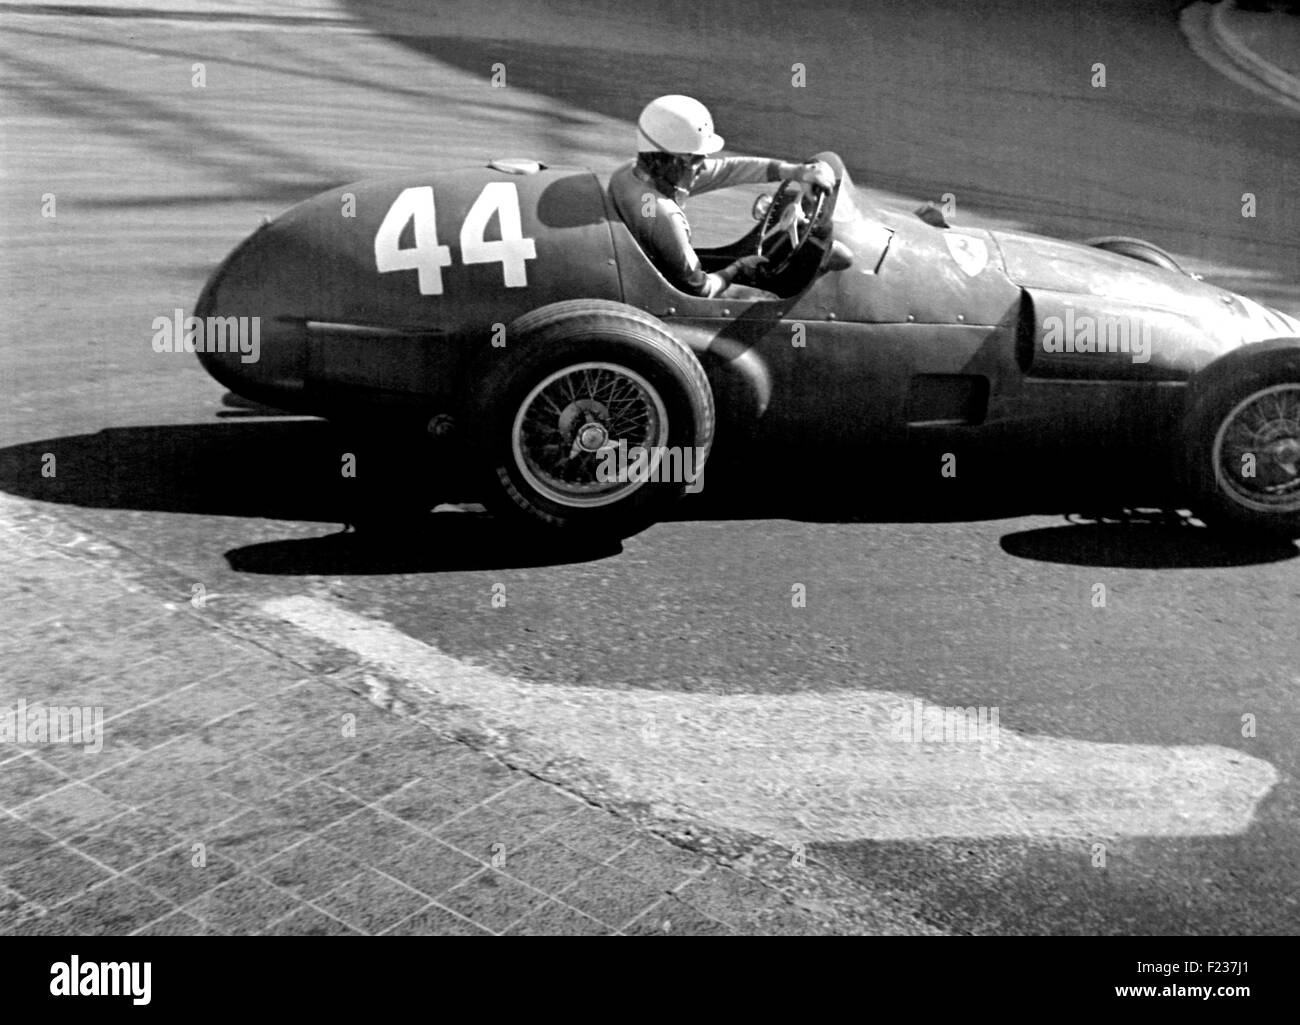 Trintignant in his Ferrari at the Gasworks Hairpin Monaco GP Monte Carlo 1955 Stock Photo